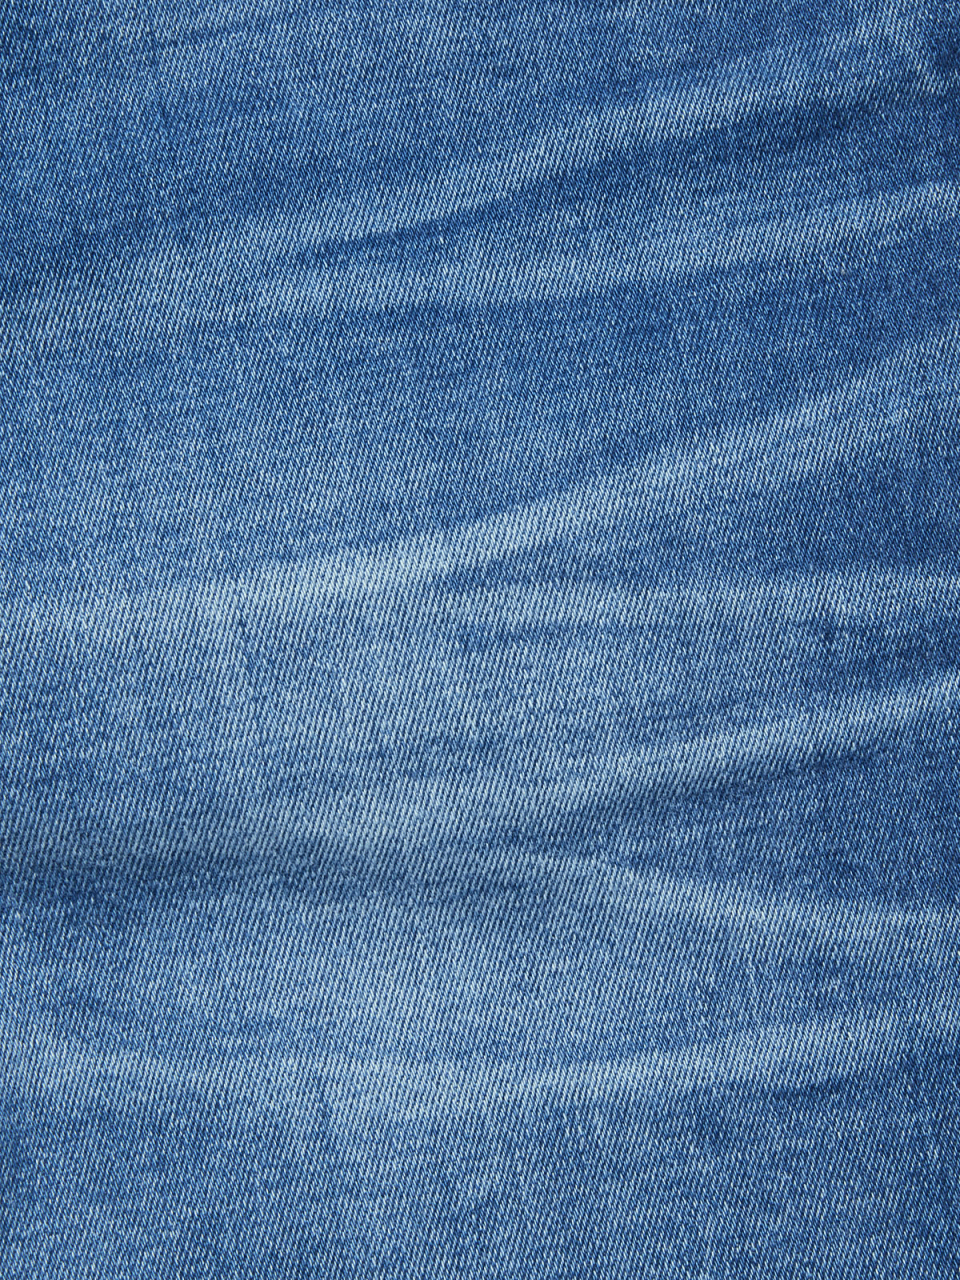 BLUE DE GENES Repi 3395 Medio Jeans